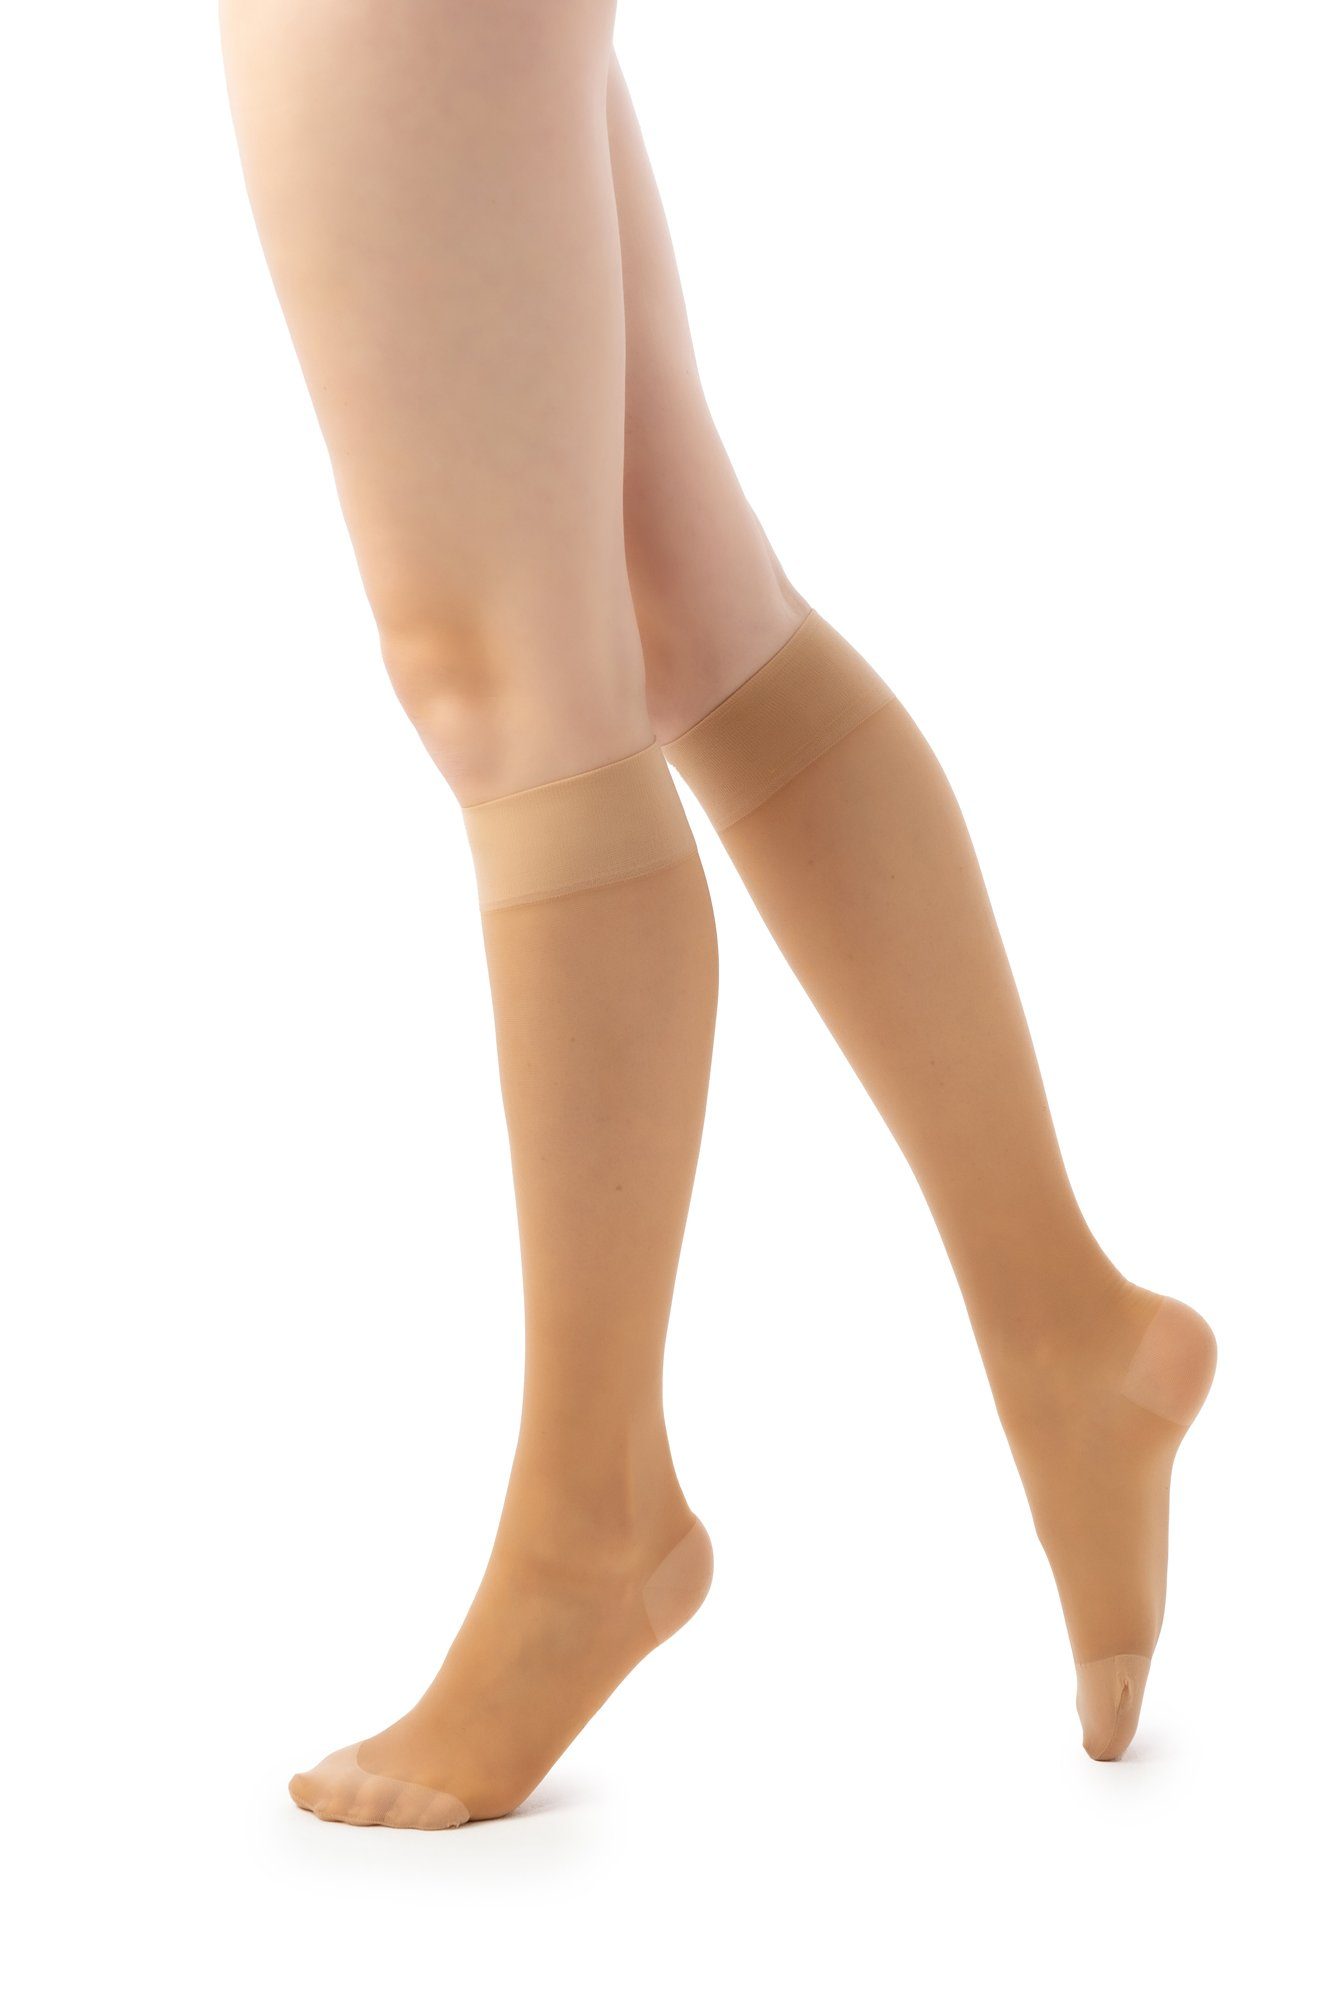 disée 4049141042_2 70 starker Knee Damen mit puder Kniestrümpfe Support disée DEN Stützkniestrumpf Socken High Kompression